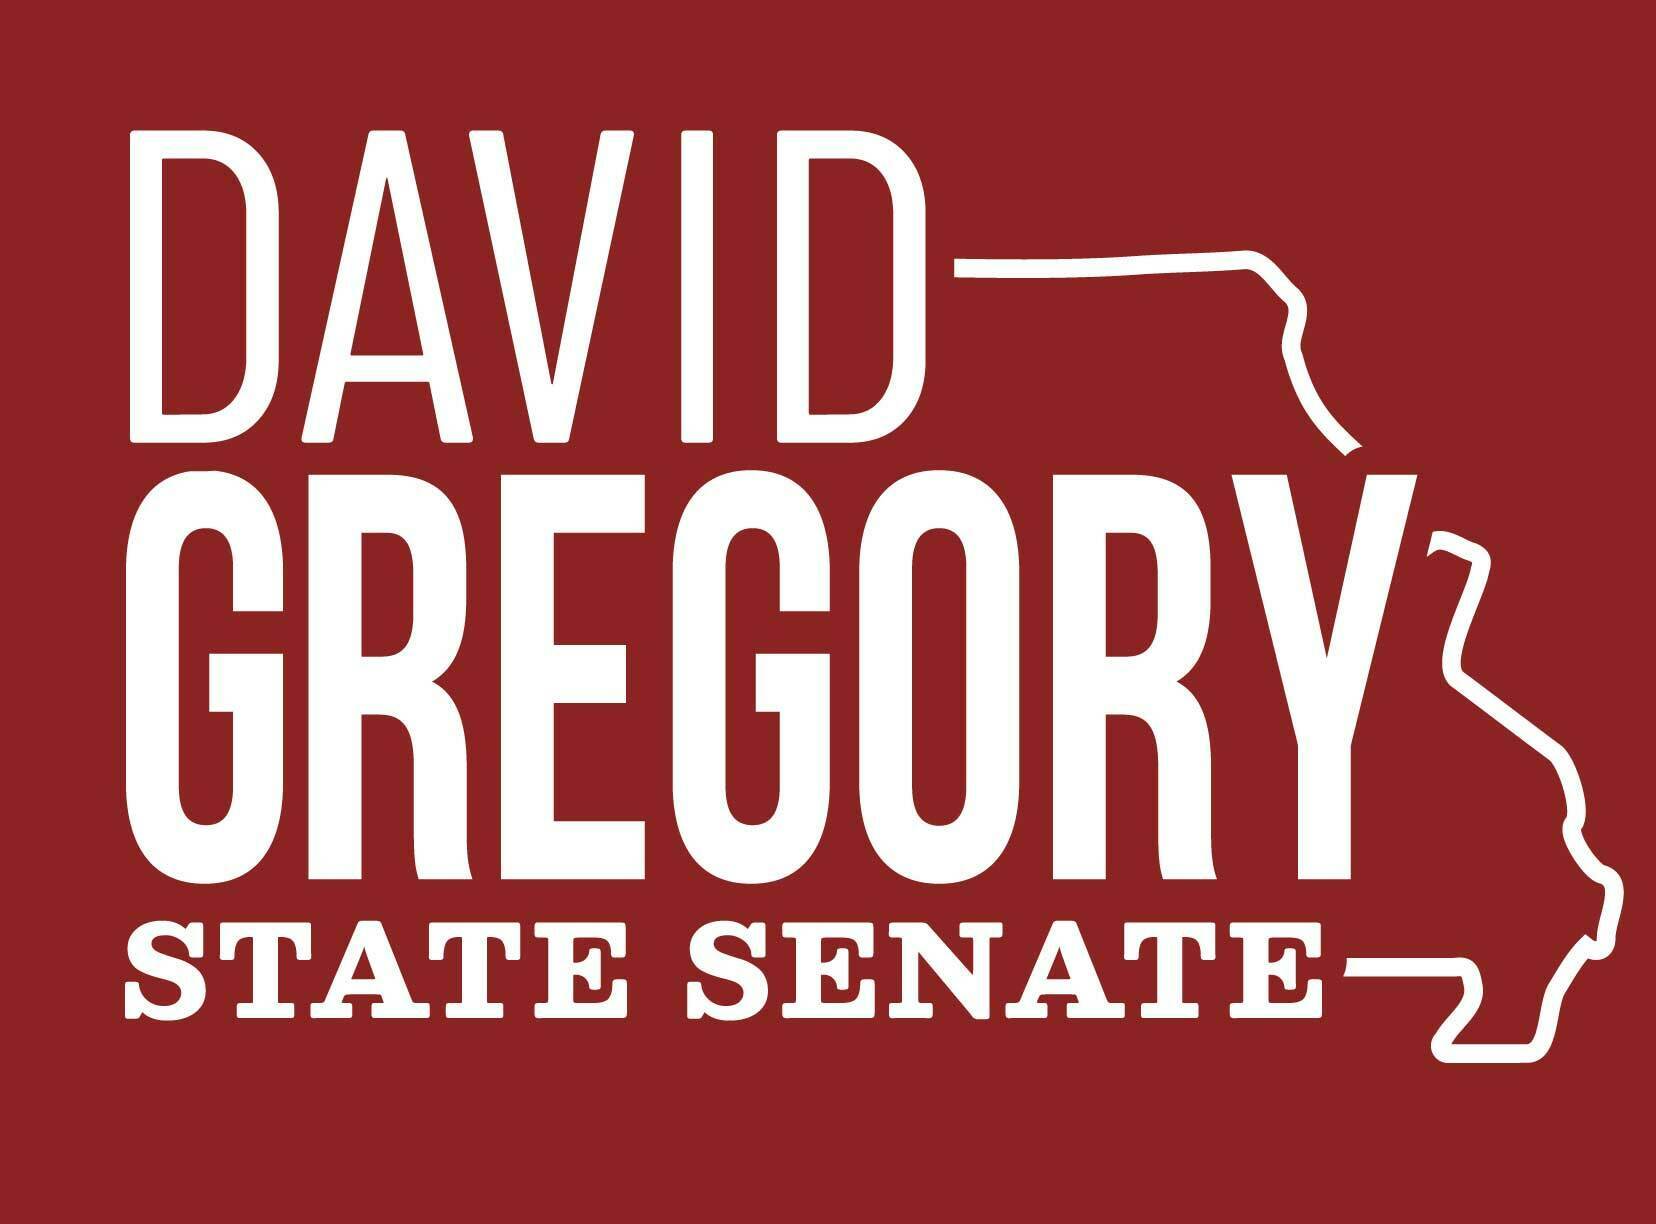 David gregory v1 final web %281%29 %281%29